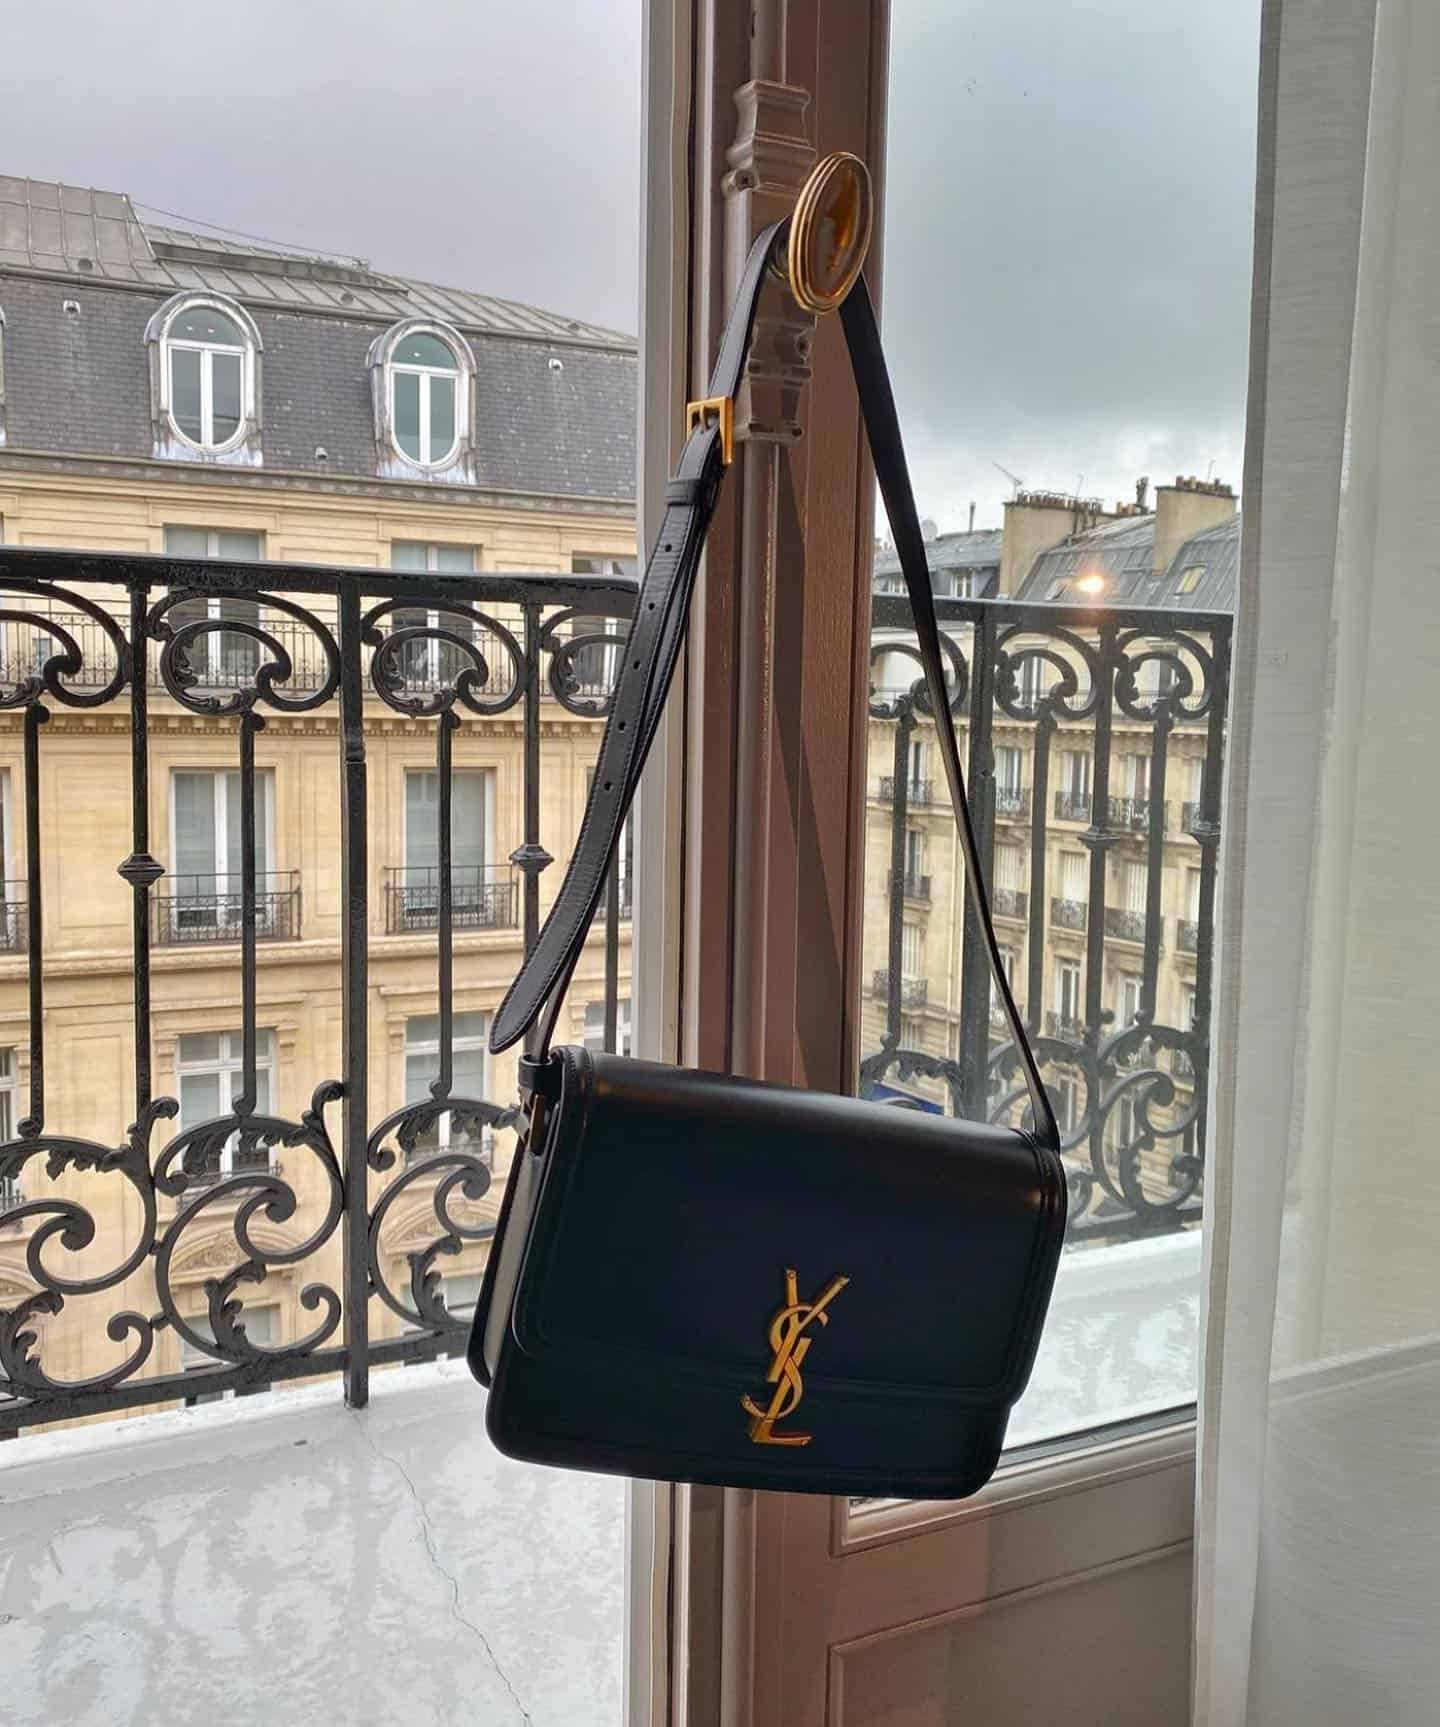 YSL Bag in Paris